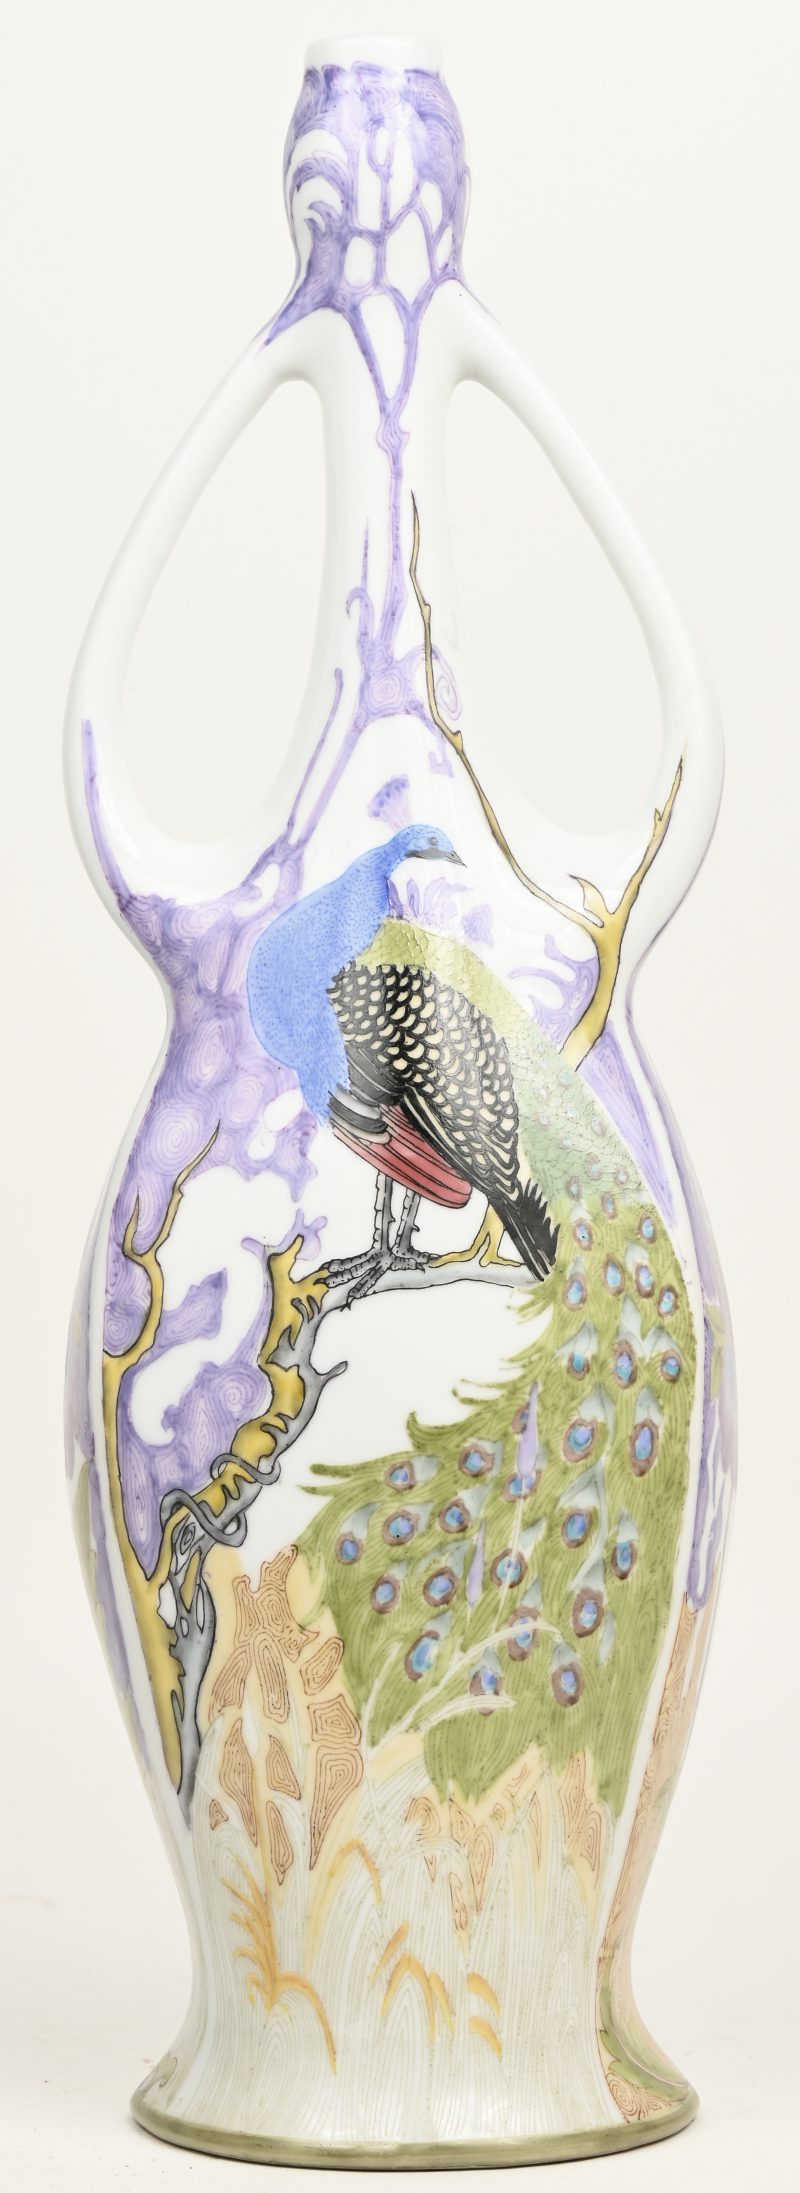 Een porseleinen vaas in art nouveaustijl, versierd met een meerkleurig van pauwen. Naar Colenbrander.